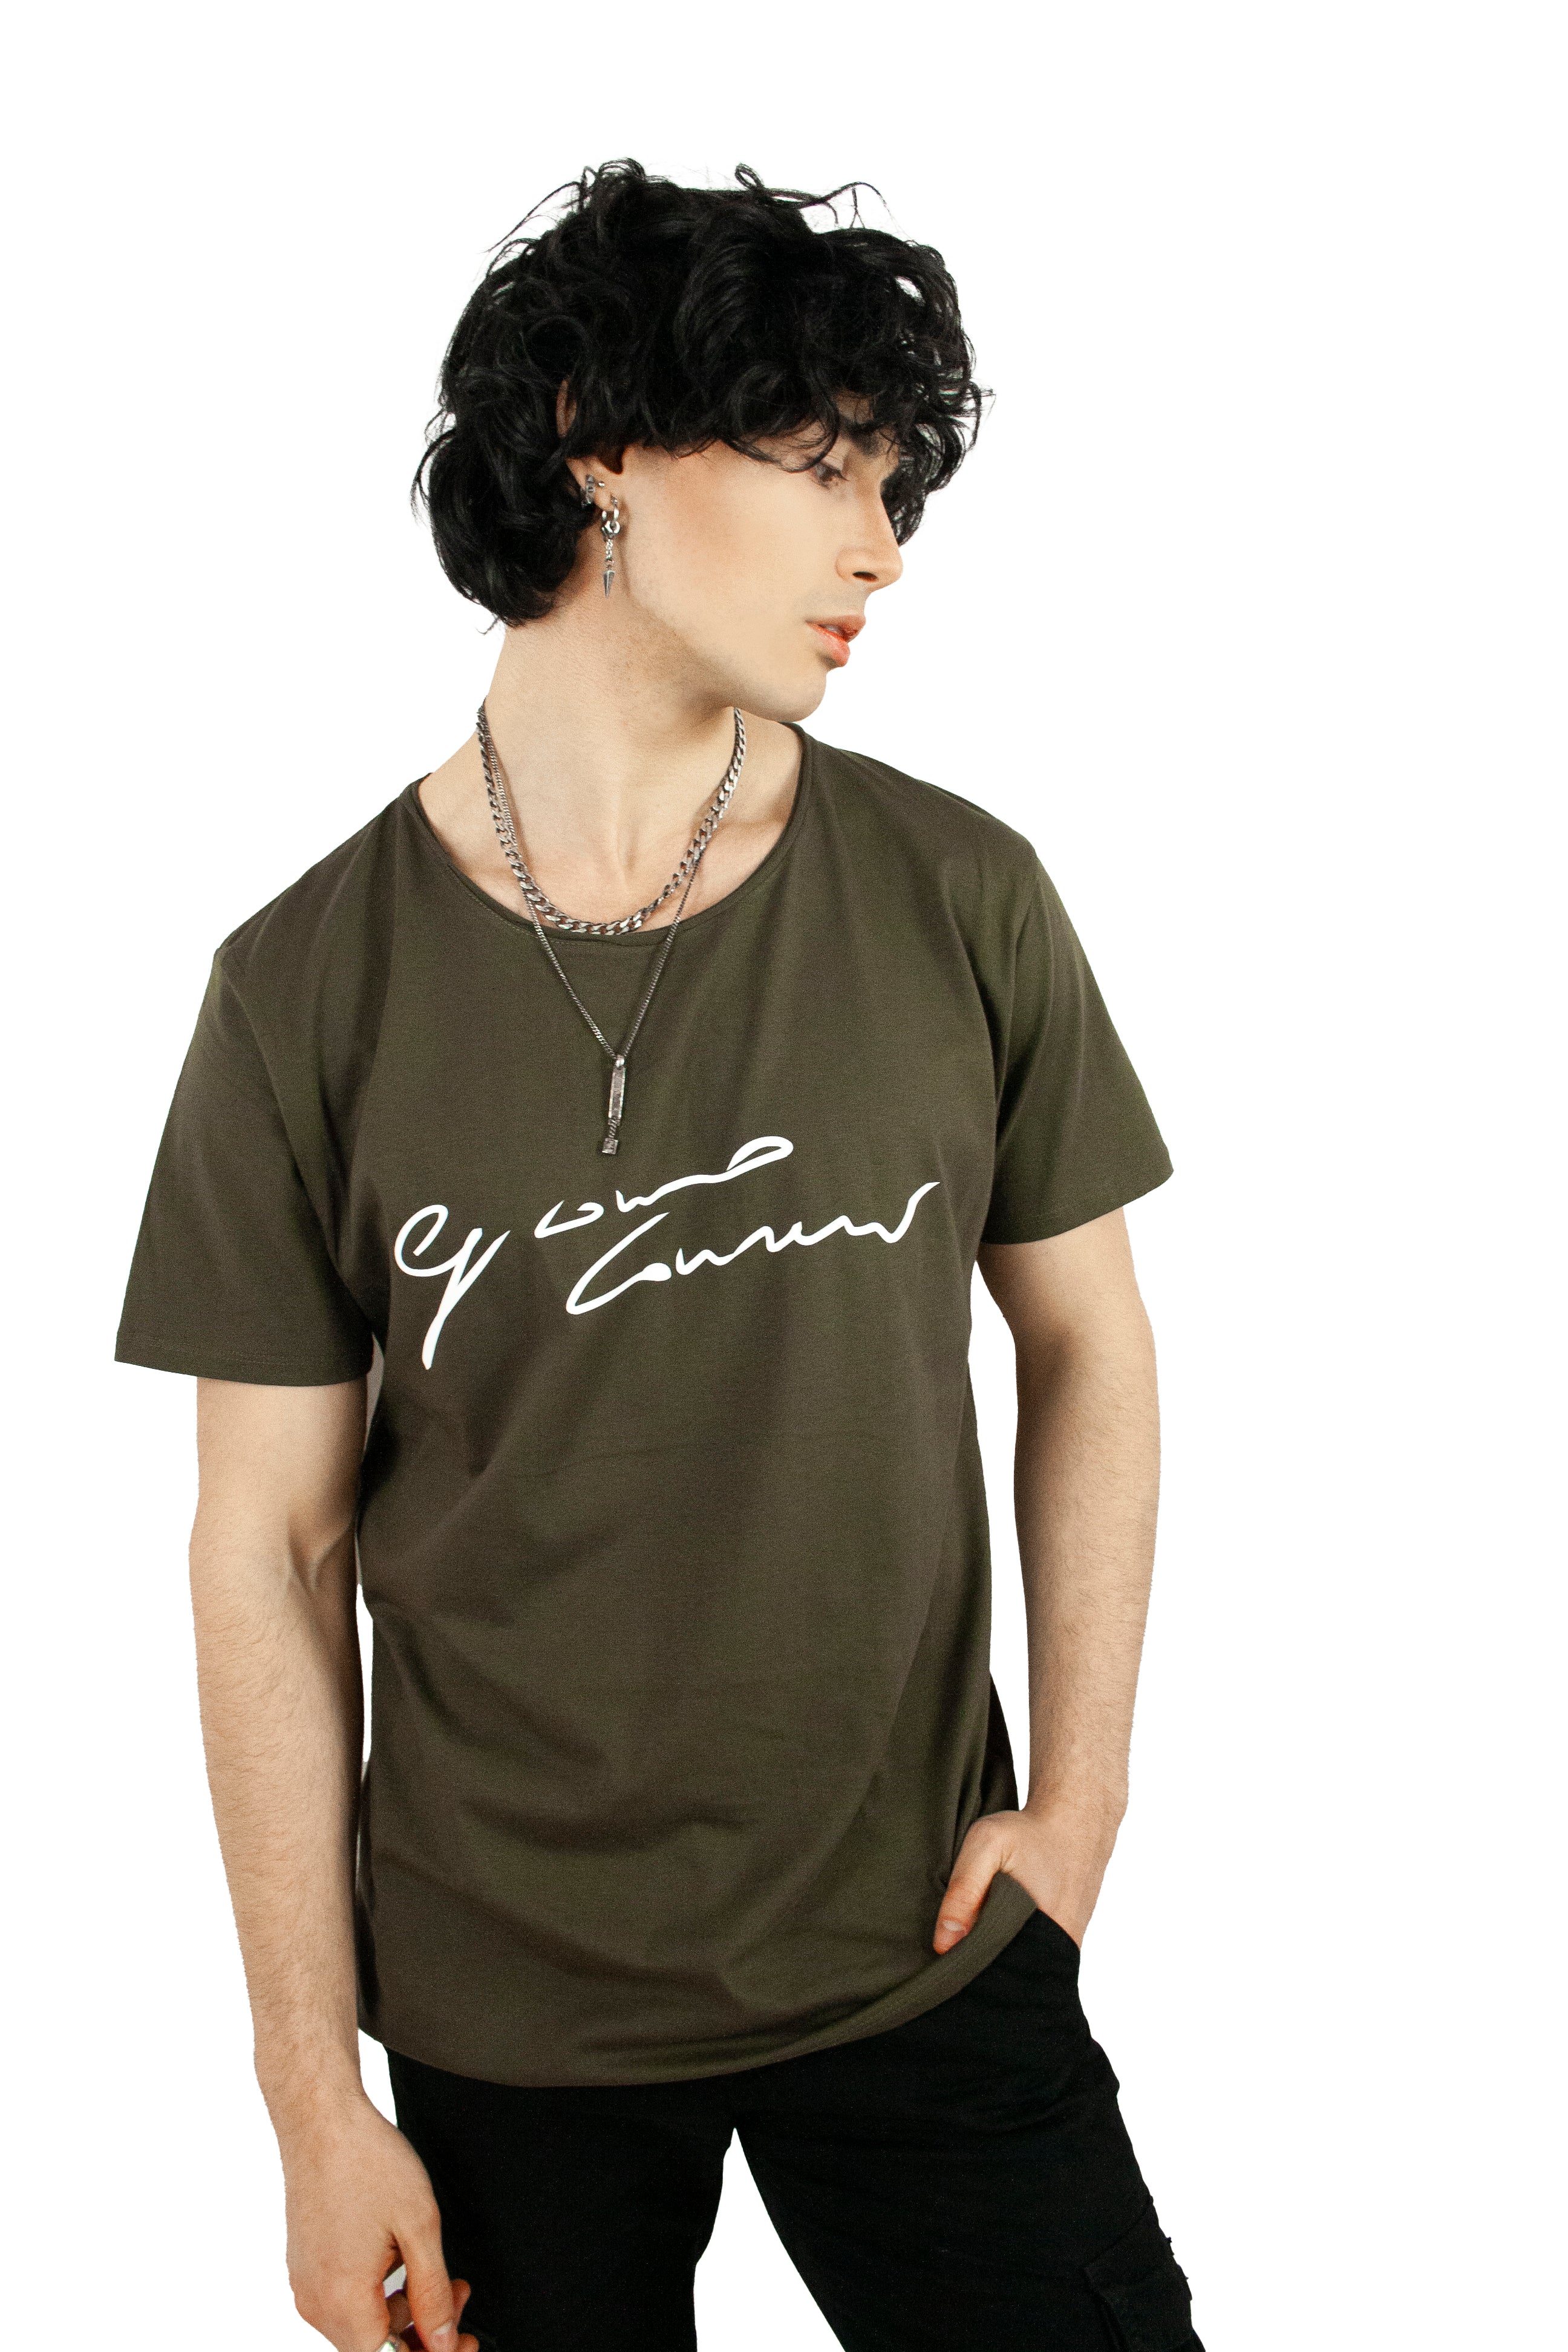 Elegant short-sleeved T-shirt for men in green